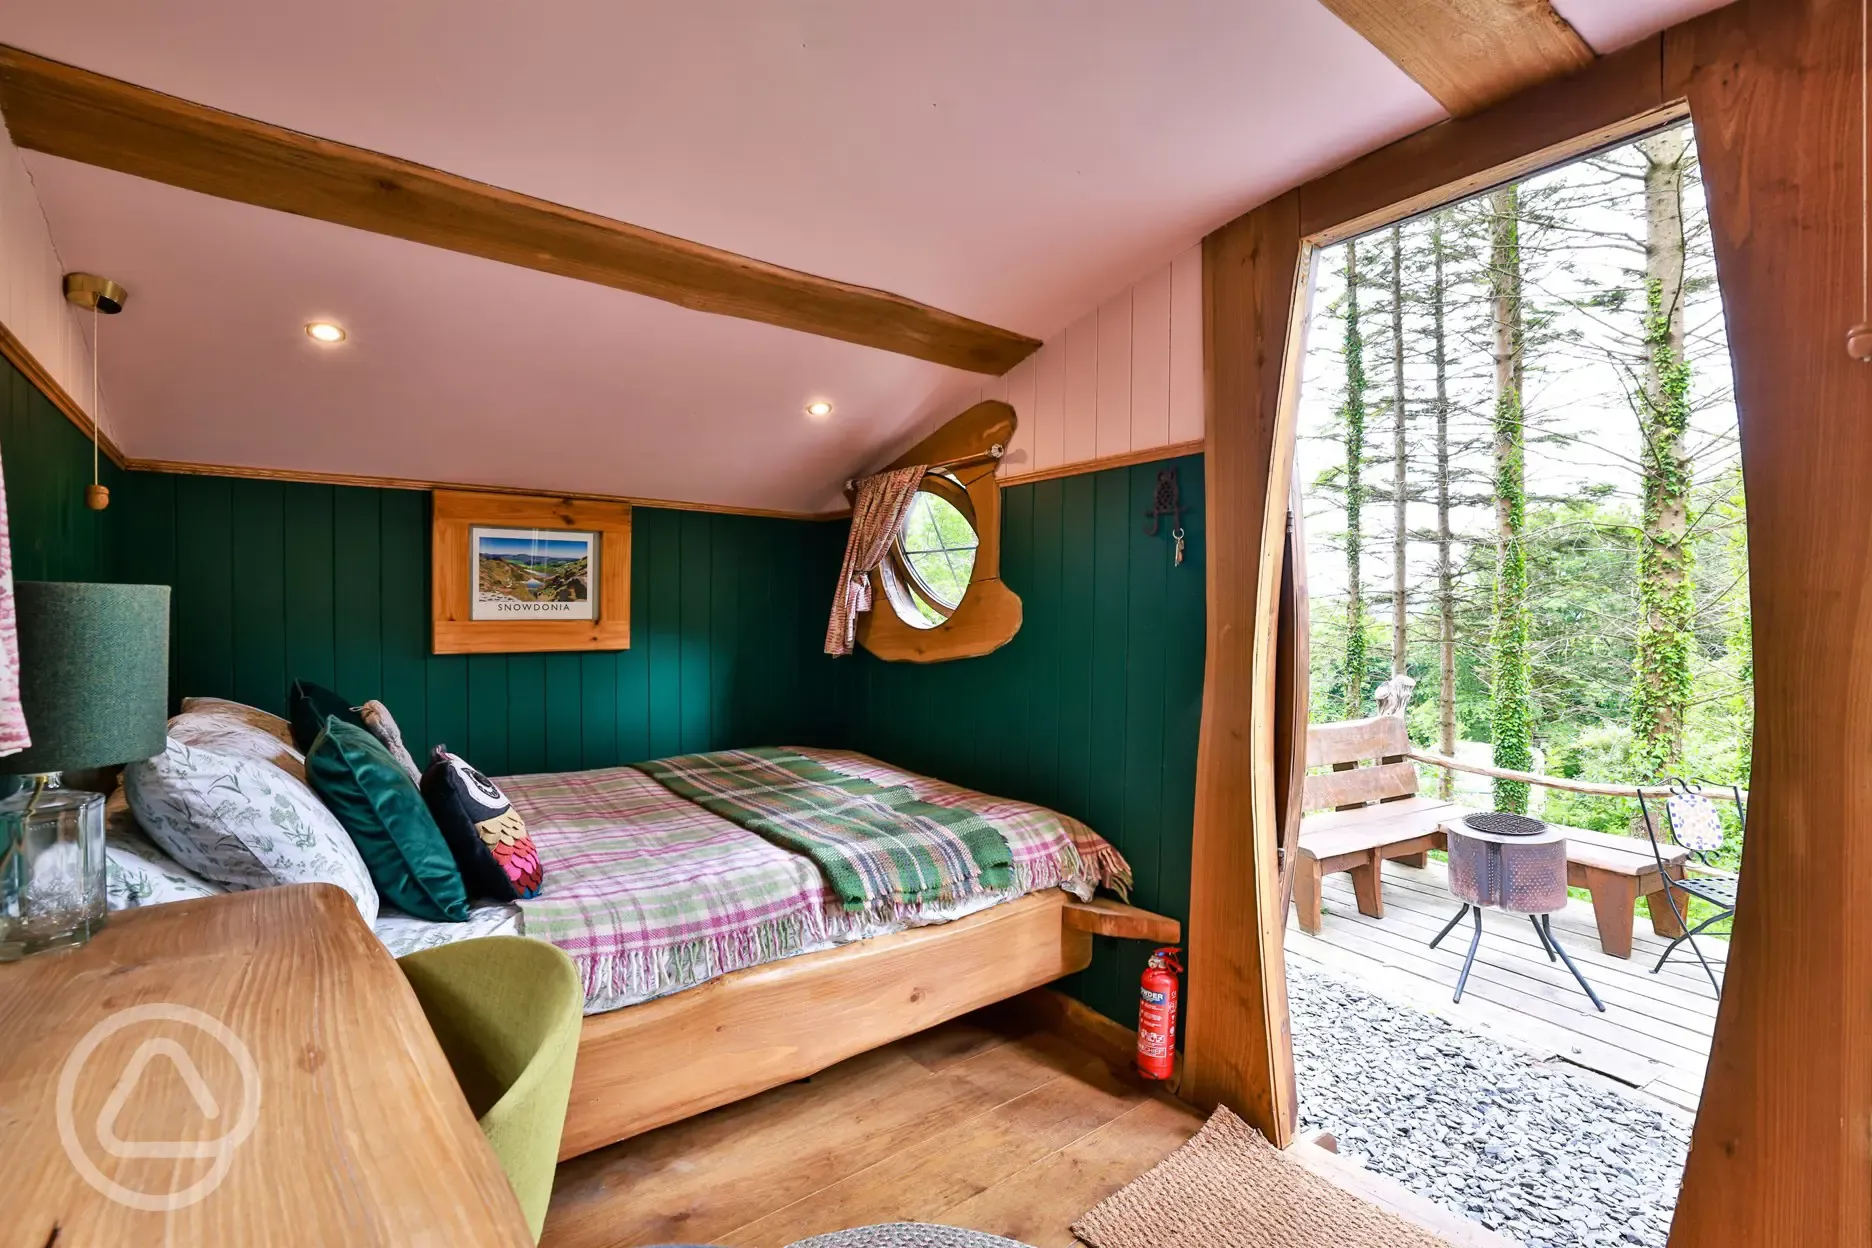 Cosy woodland cabin interior